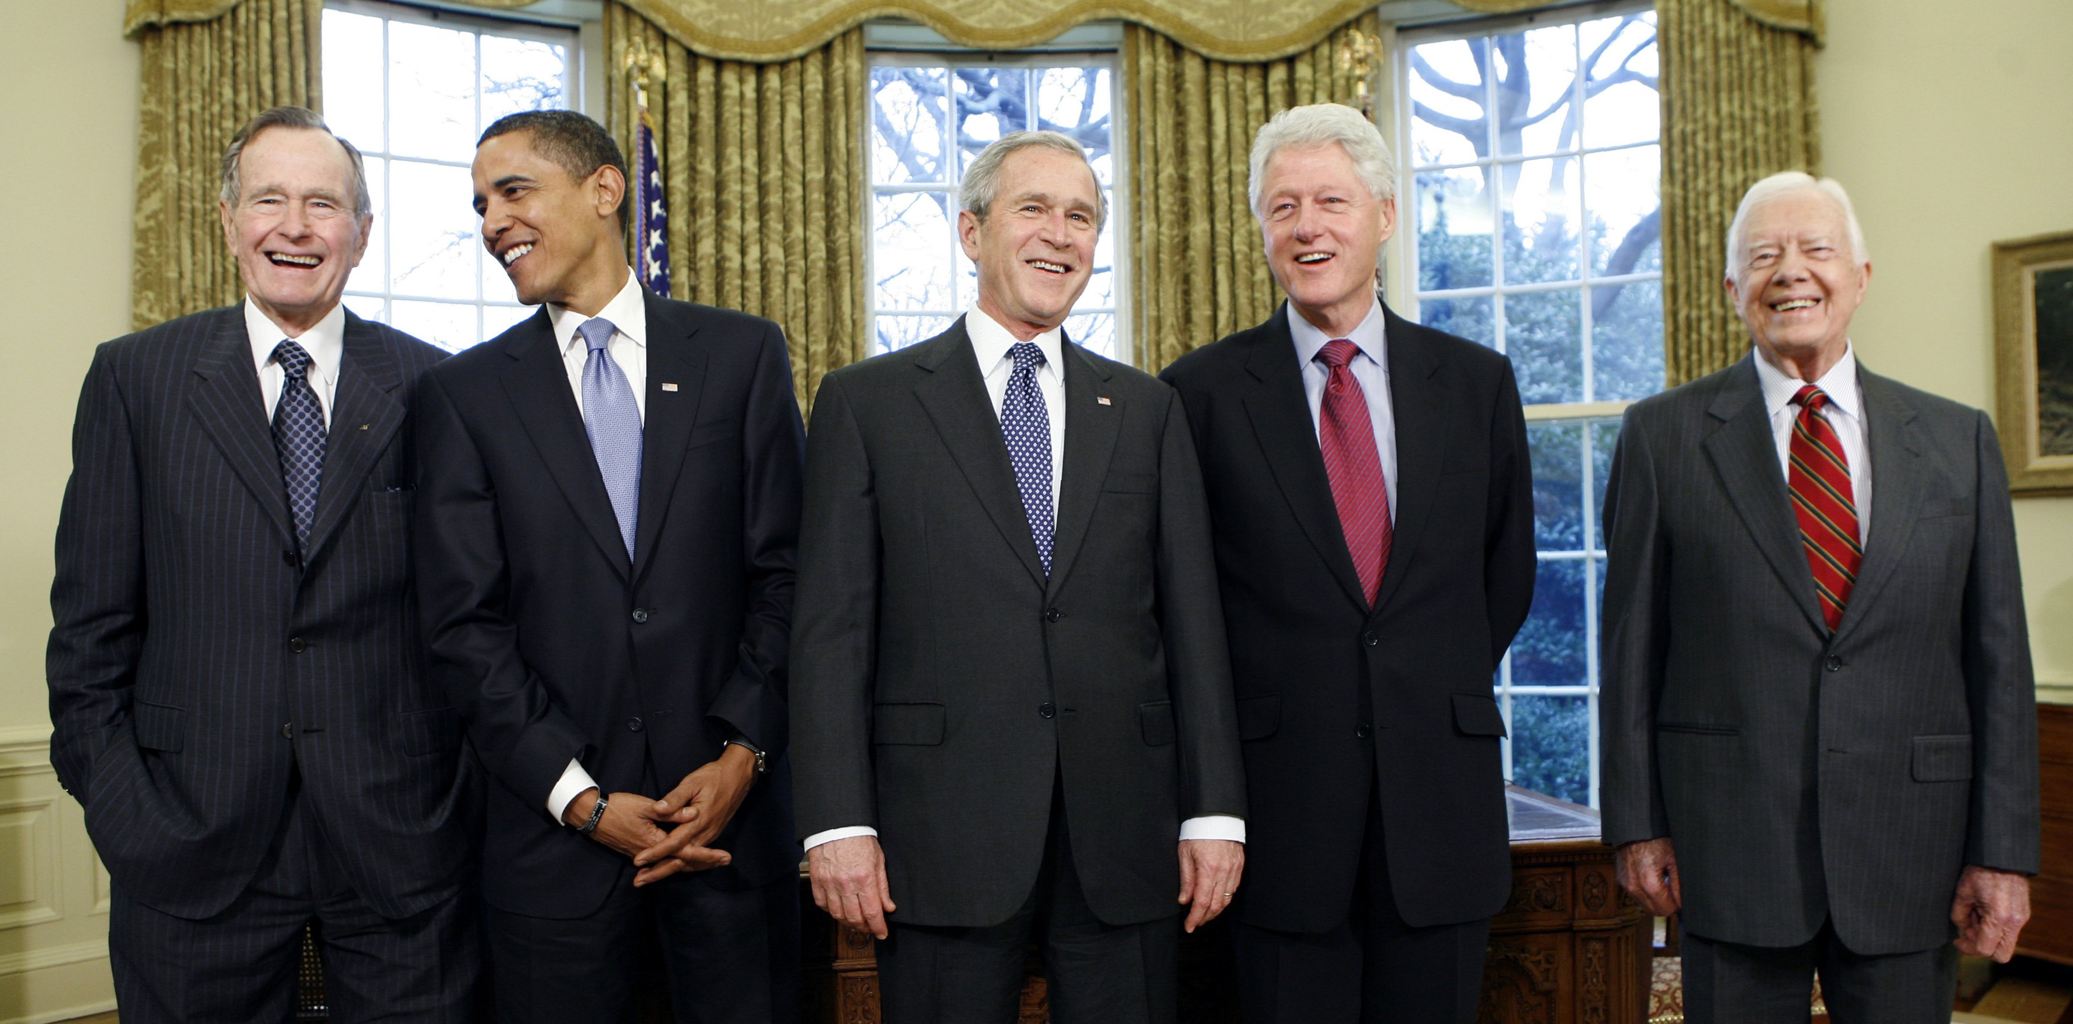 президенты сша фото с их именами